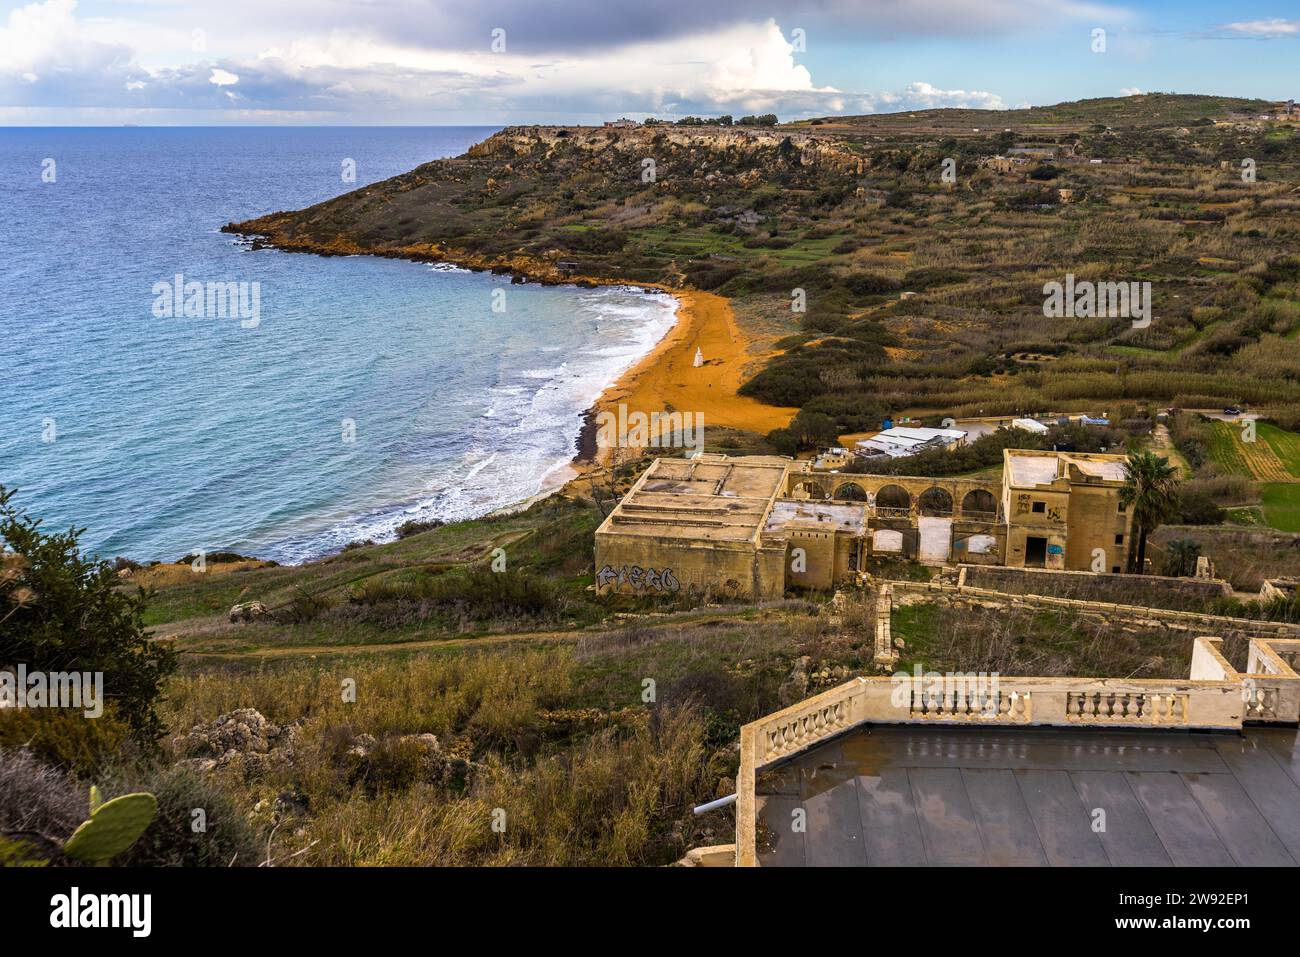 In der Ramla Bay auf der Insel Gozo gibt es zahlreiche römische Ruinen, die noch nicht vollständig ausgegraben wurden. Xaghra, Malta Stockfoto